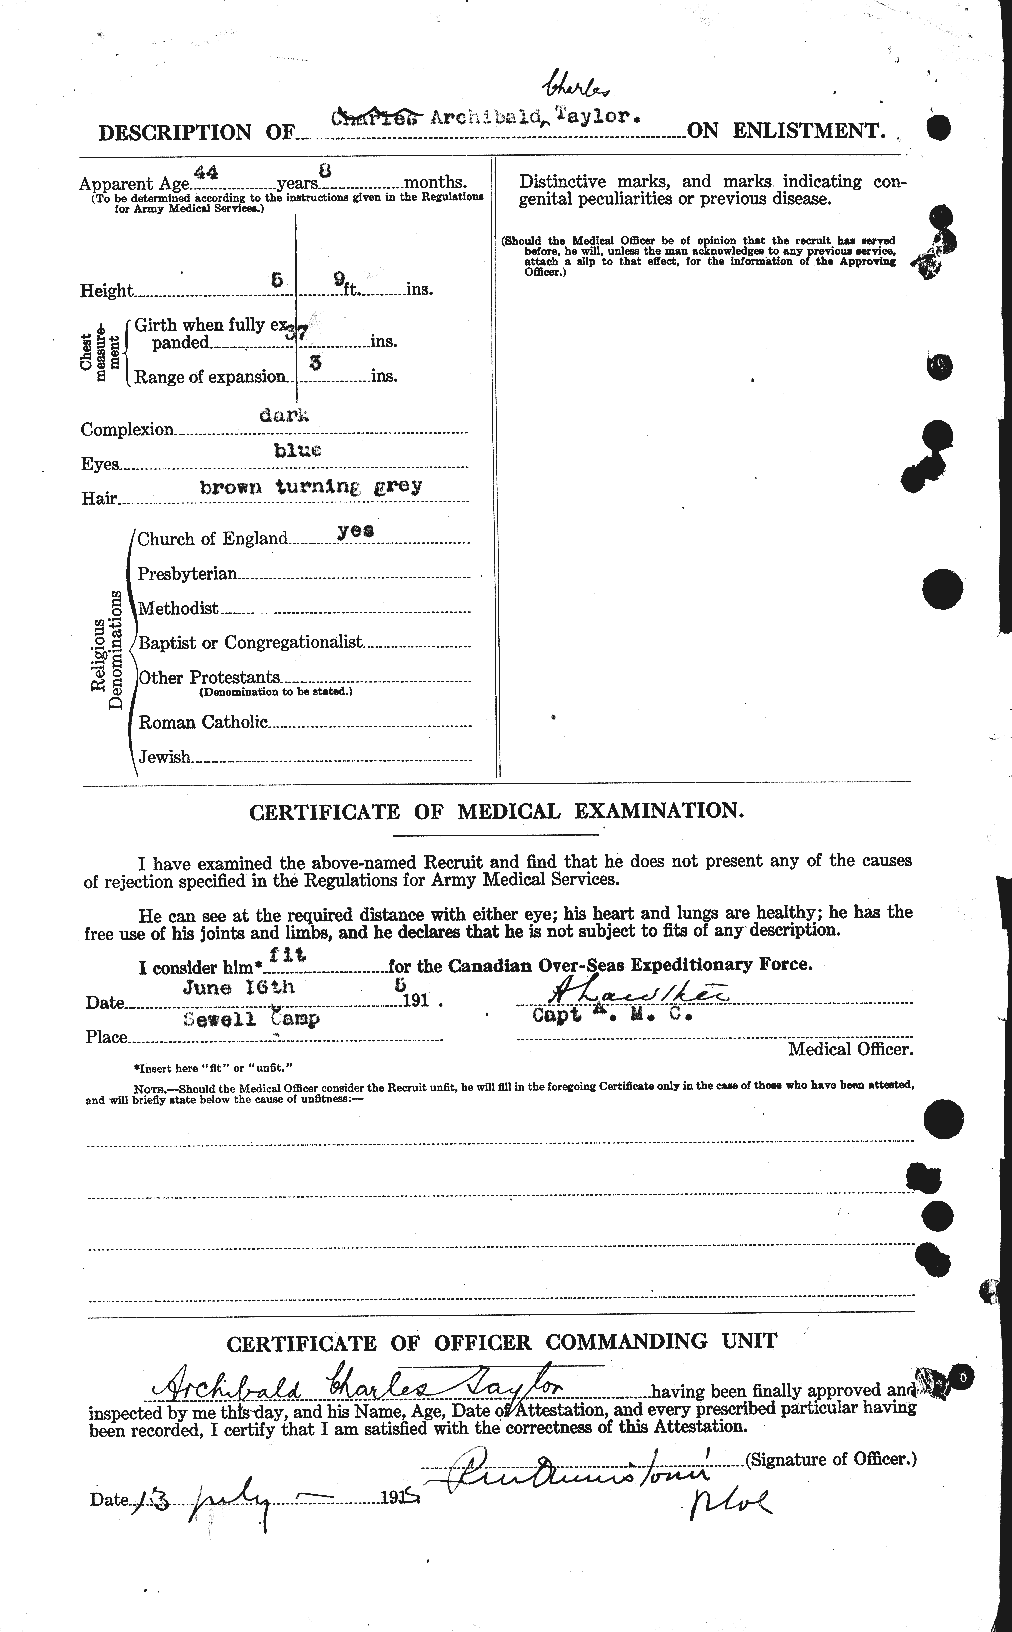 Dossiers du Personnel de la Première Guerre mondiale - CEC 626242b